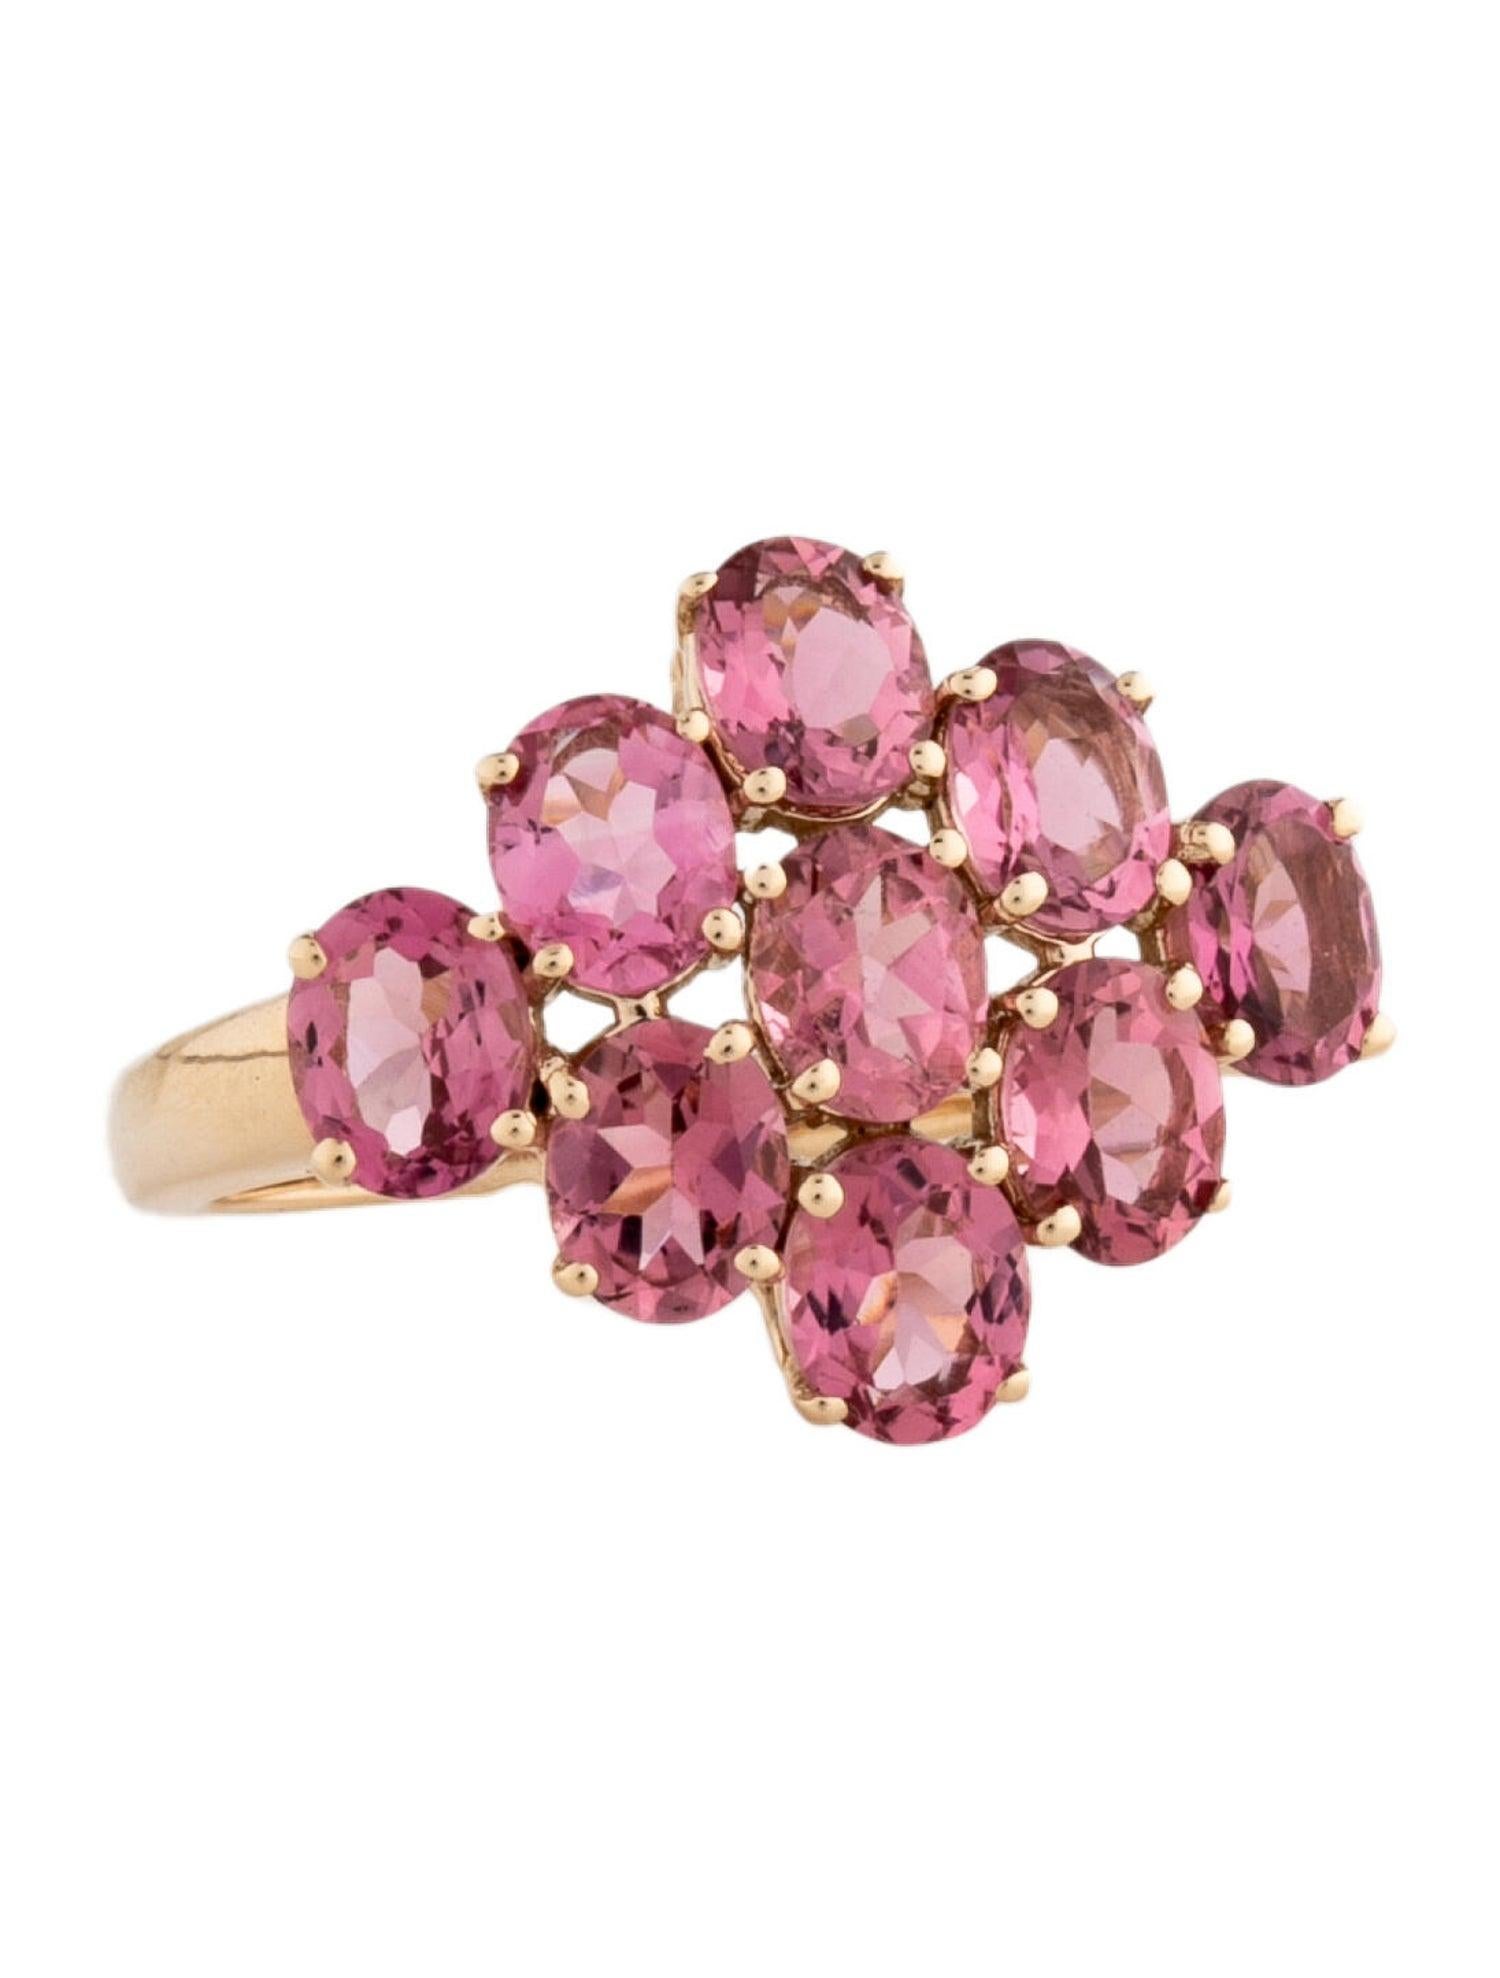 Tauchen Sie ein in die faszinierende Welt unserer Rainbow Gemstone Radiance Collection mit diesem exquisiten Pink Turmalin Ring. Inspiriert von den lebhaften Wandteppichen eines üppigen Waldes, zelebriert jedes Stück dieser Kollektion das